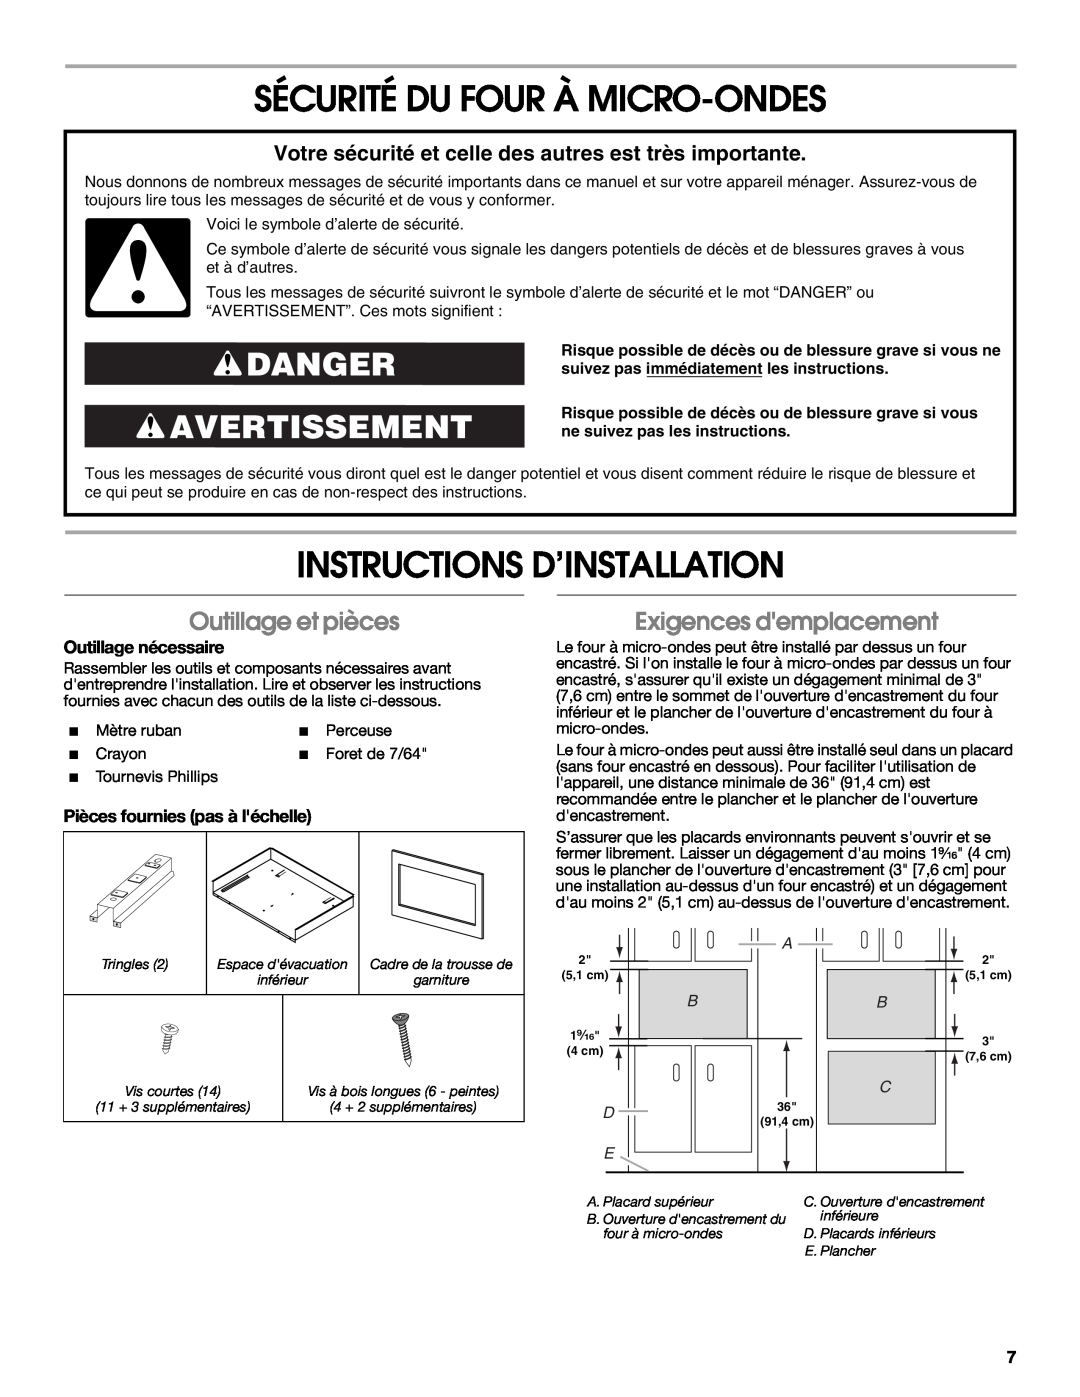 Whirlpool MK2167 Sécurité Du Four À Micro-Ondes, Instructions D’Installation, Danger Avertissement, Outillage et pièces 